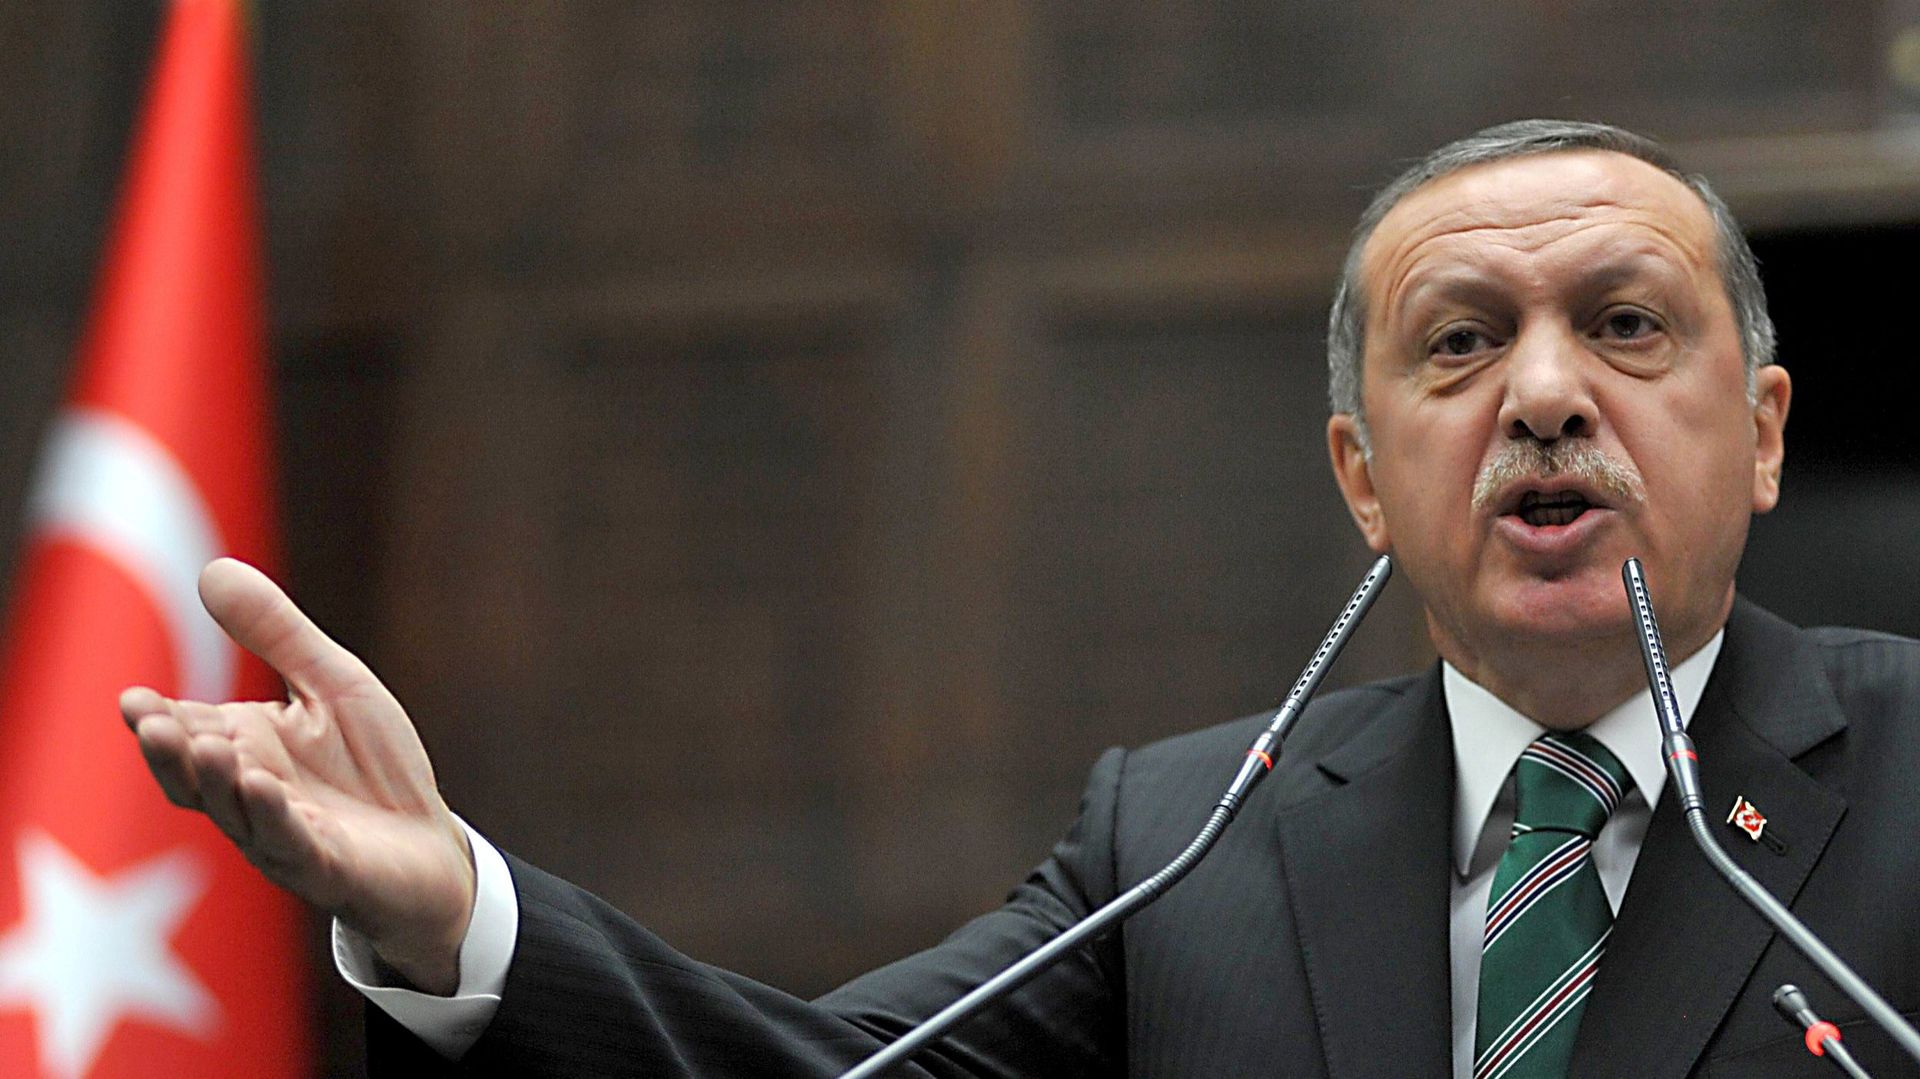 Le Premier ministre turque Recep Tayyip Erdogan n'a pas réussi à mettre en place la réforme de la Constitution qu'il avait promis.